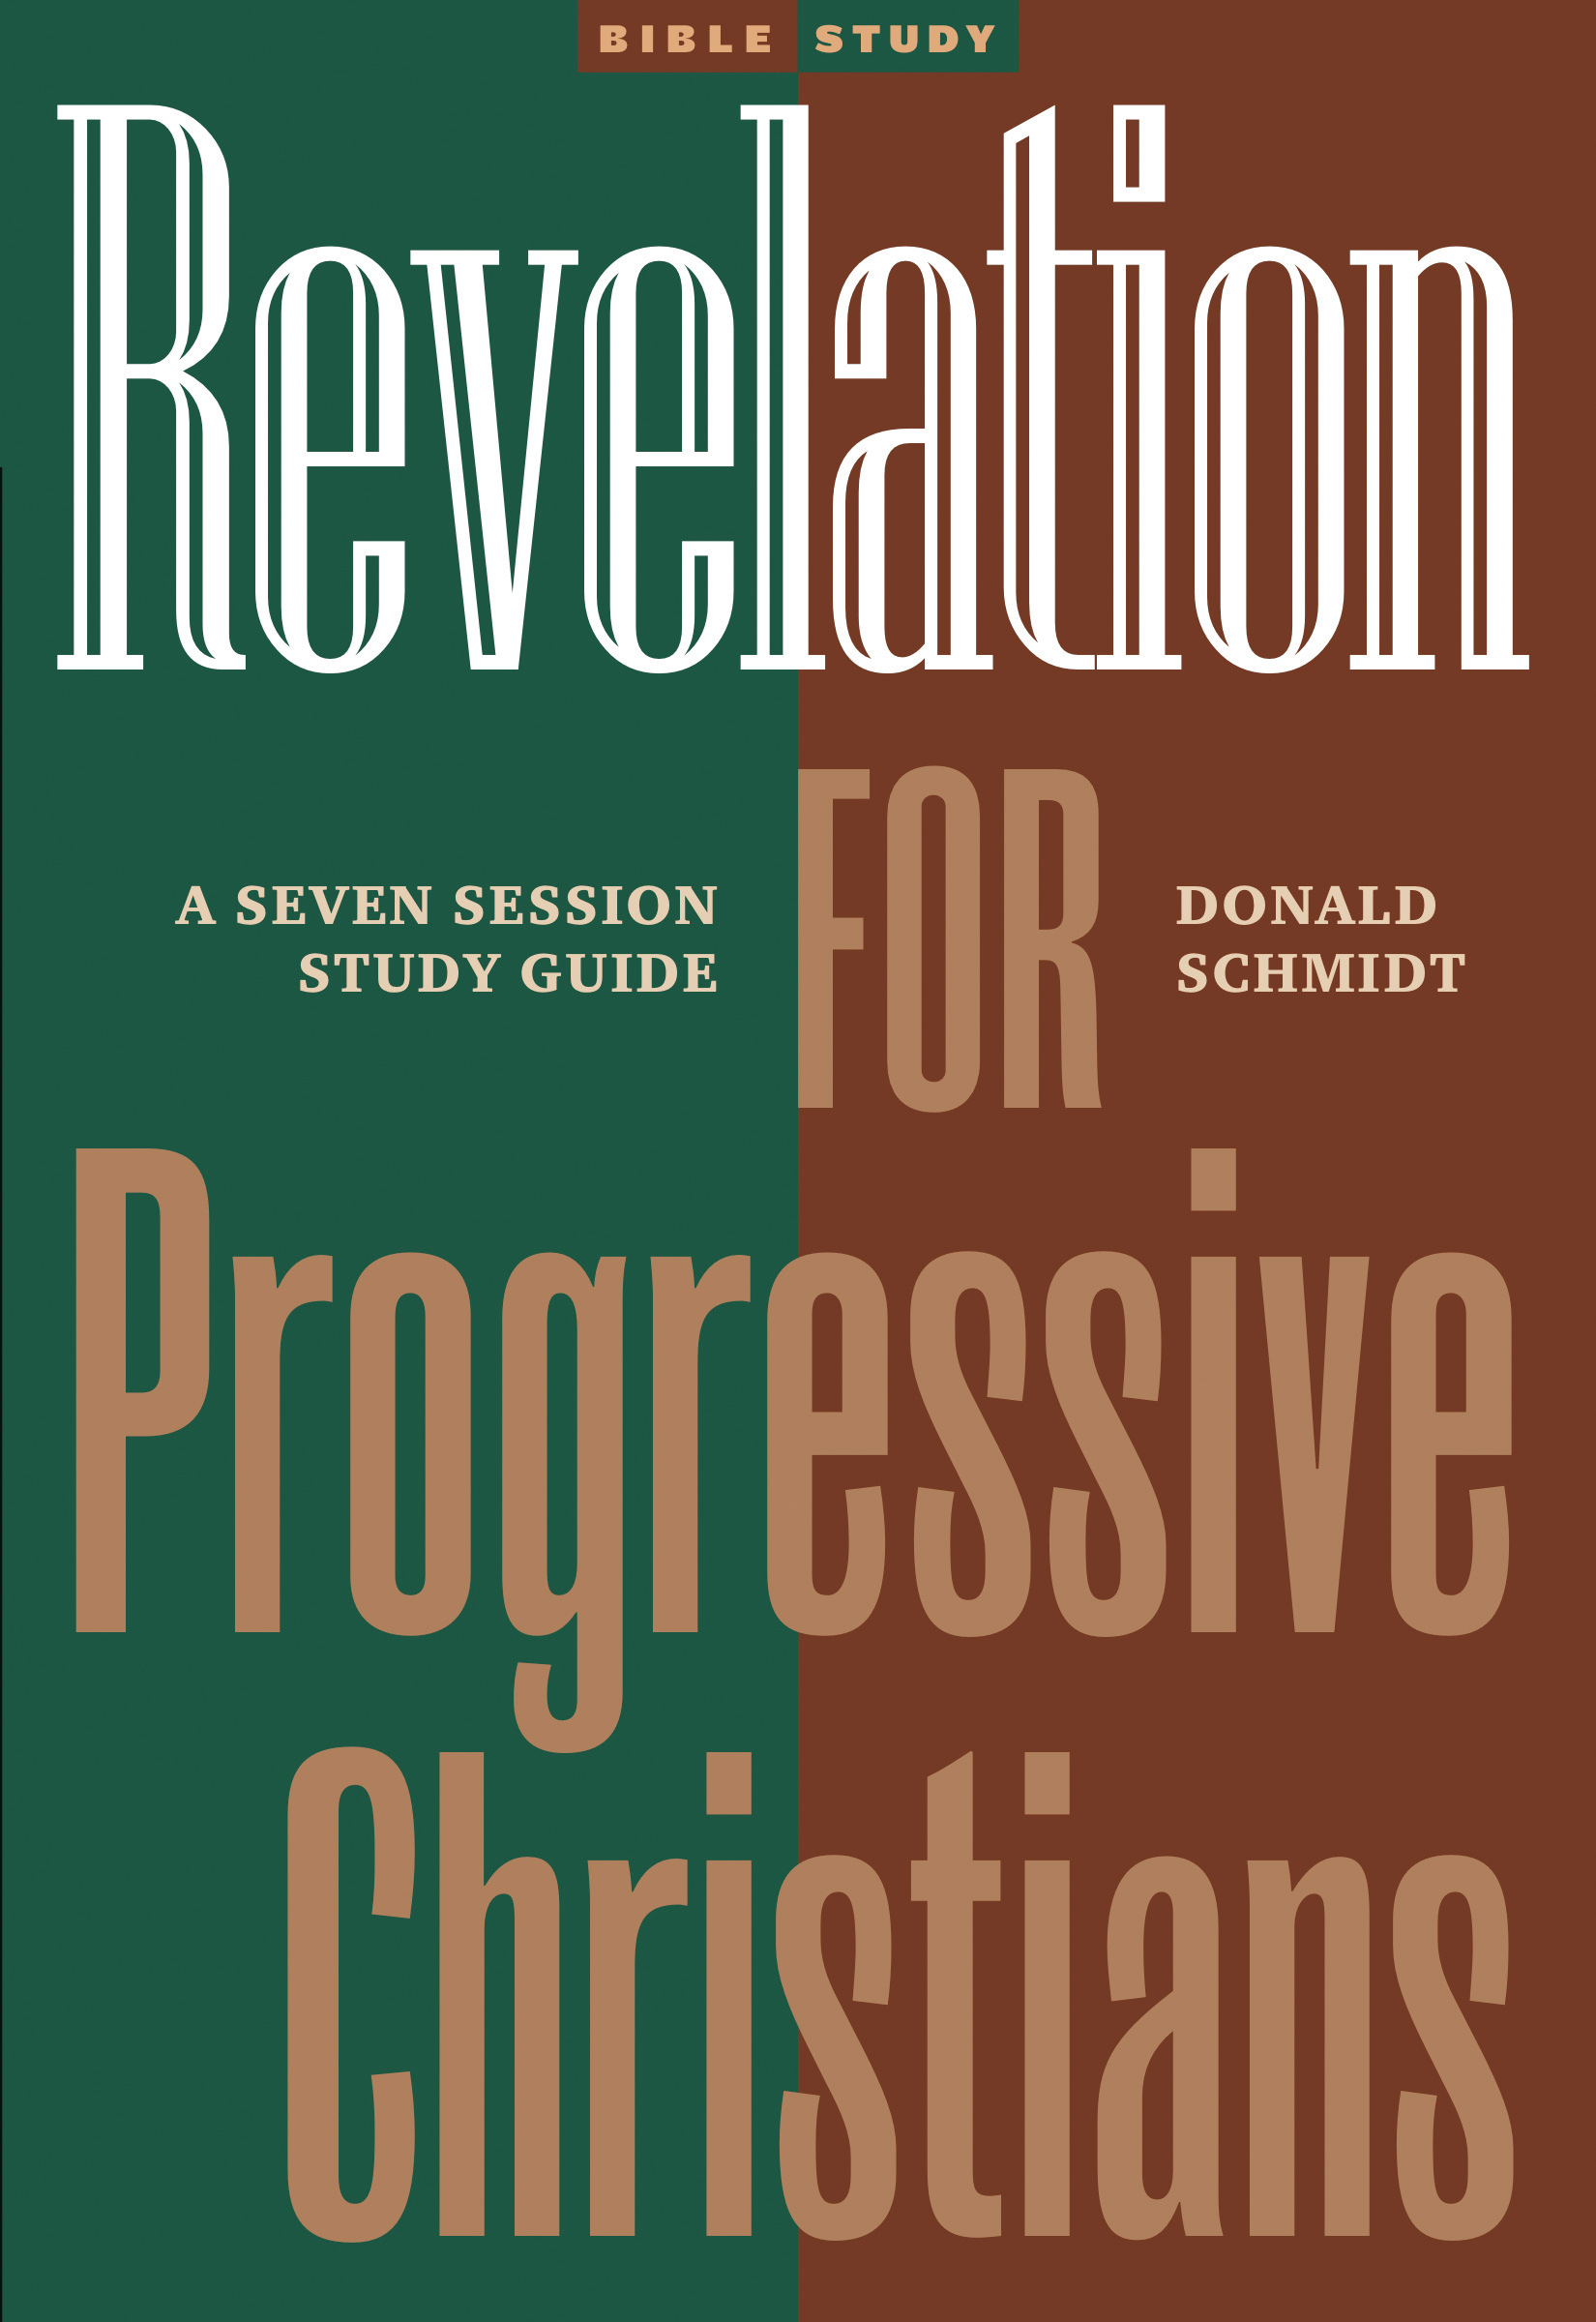 Revelation for Progressive Christians